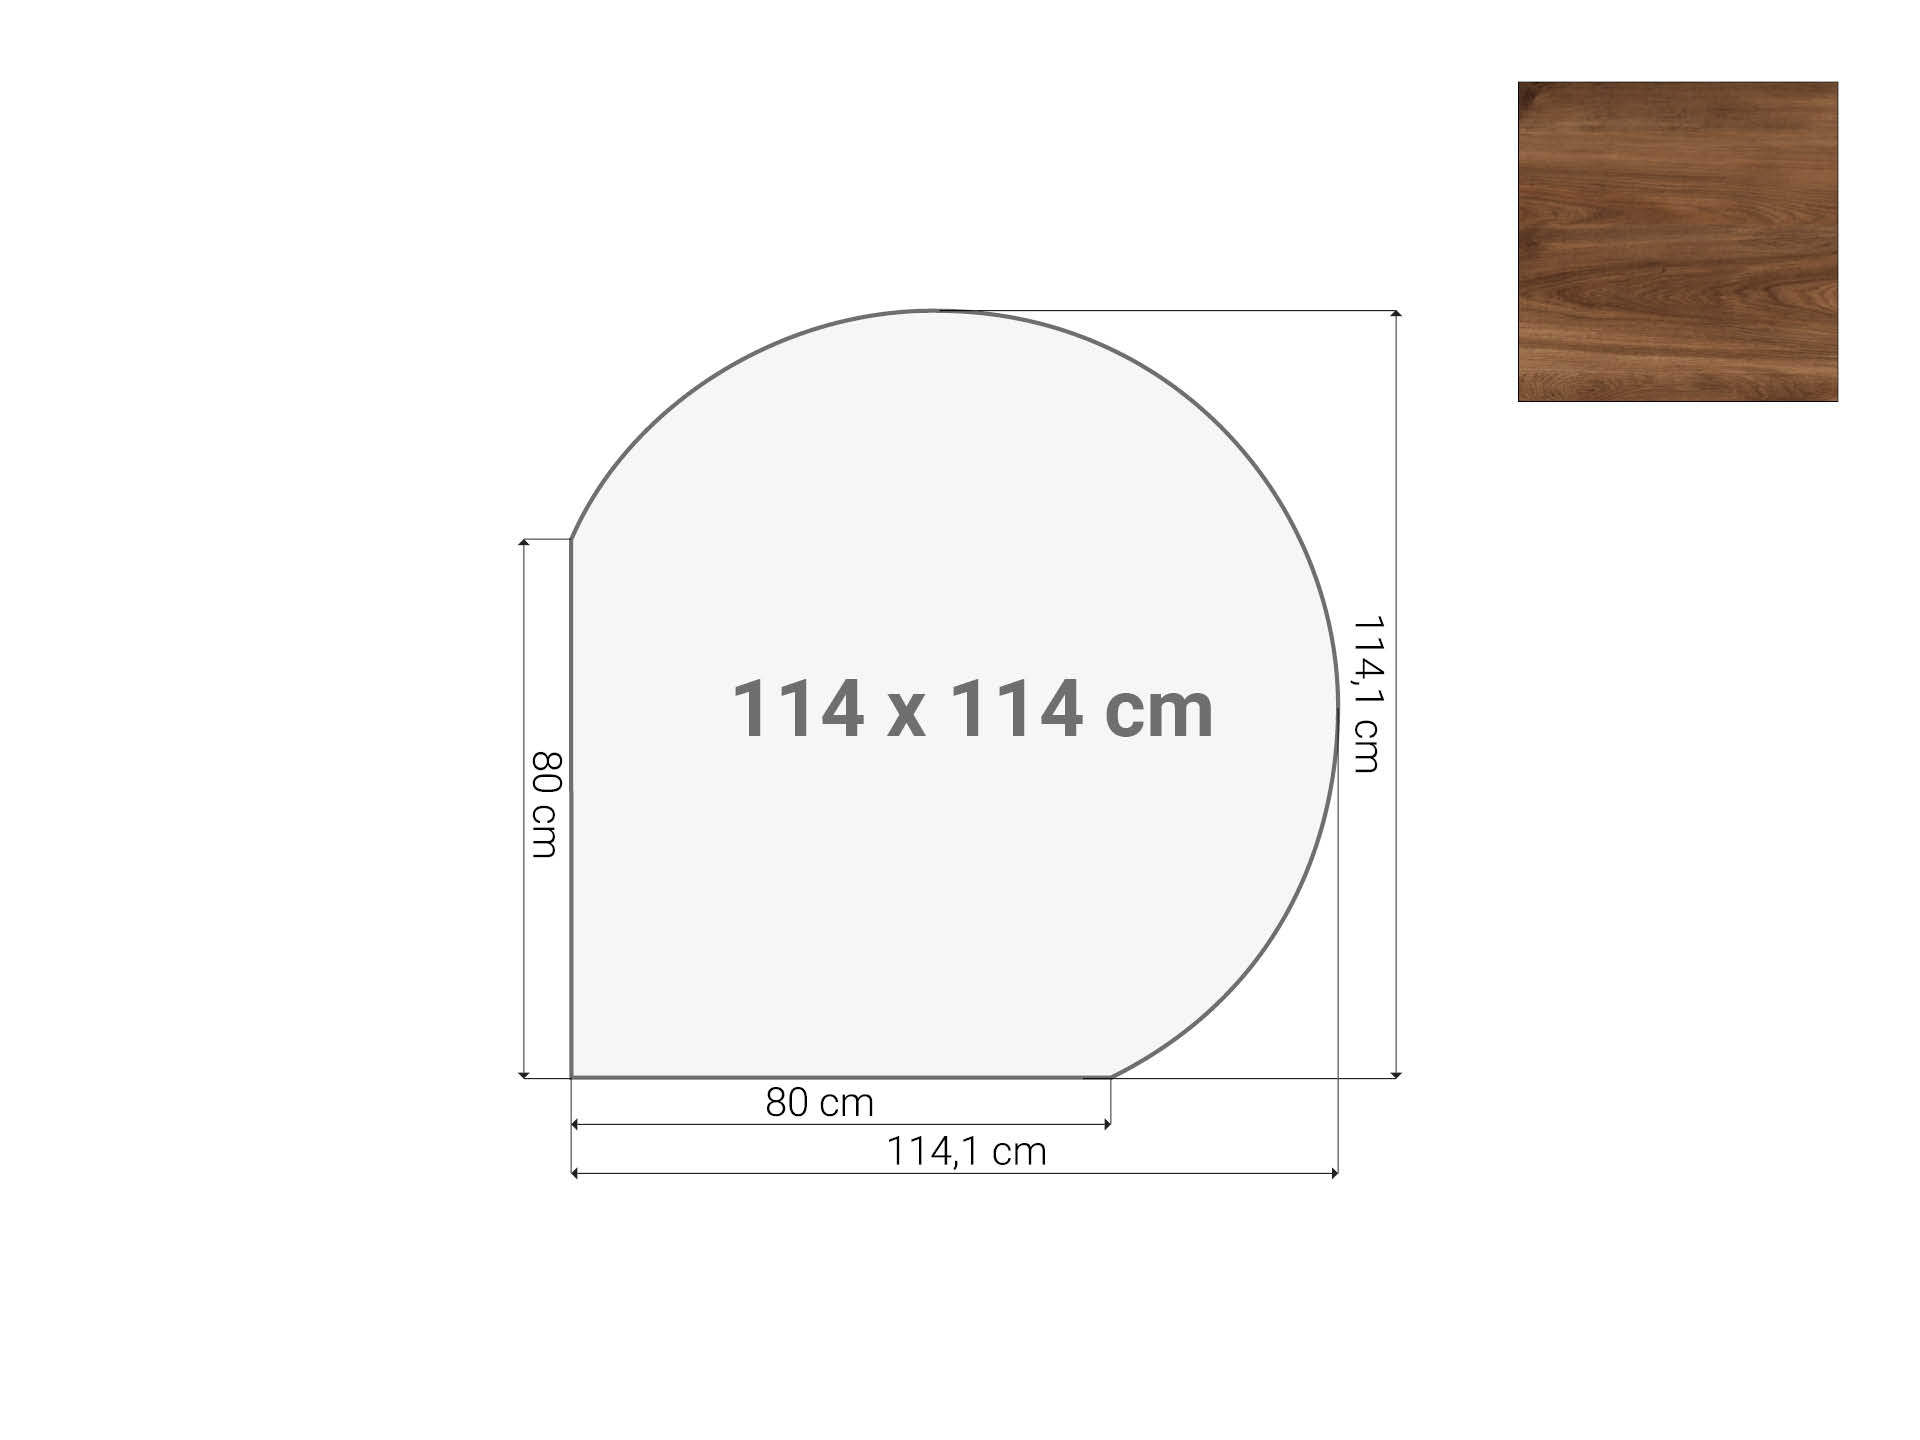 Vergaderstuk rond aanzetblad Cognac Walnoten 120cm diameter 114x114 cm